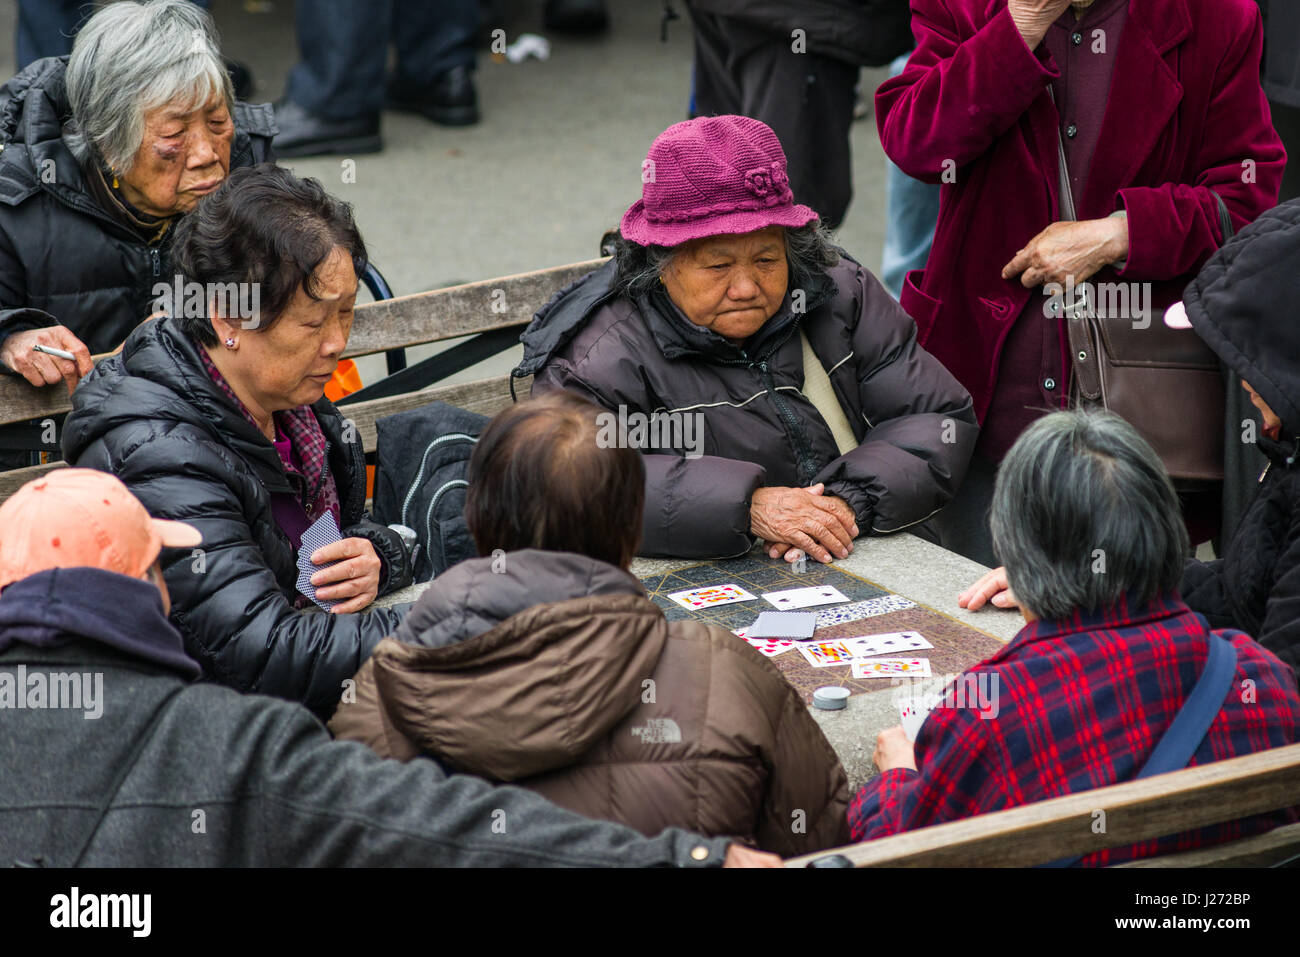 Dames âgées jouant des jeux de cartes sur une table en pierre en plein air, Columbus Park, New York Banque D'Images